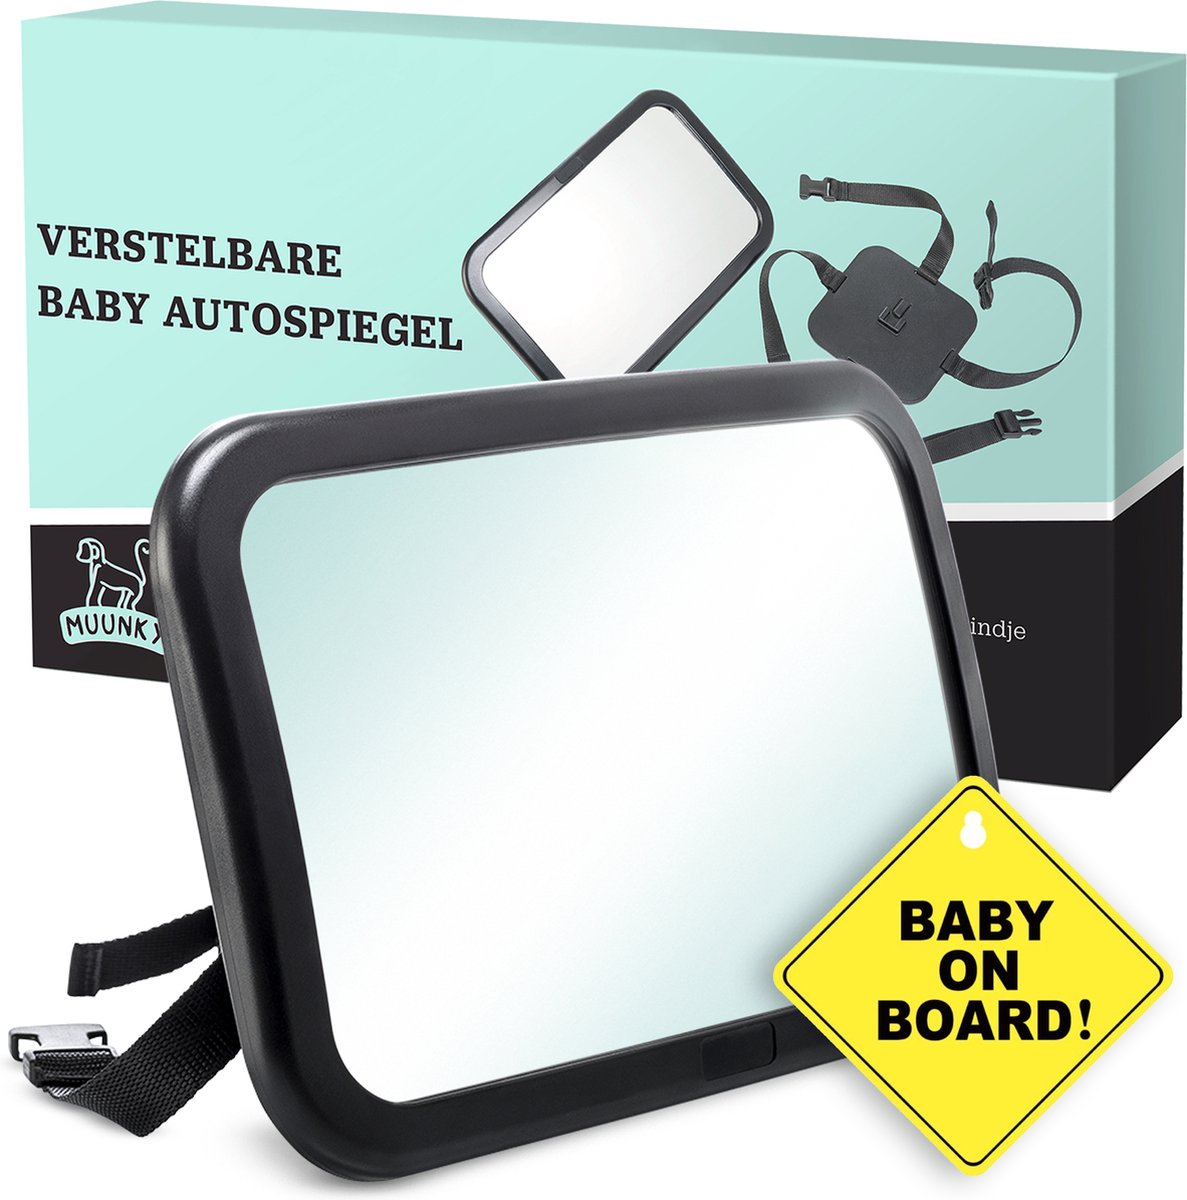 Autospiegel Baby - Verstelbare Achteruitkijkspiegel - Babyspiegel voor Achterbank - Baby on Board met Zuignap